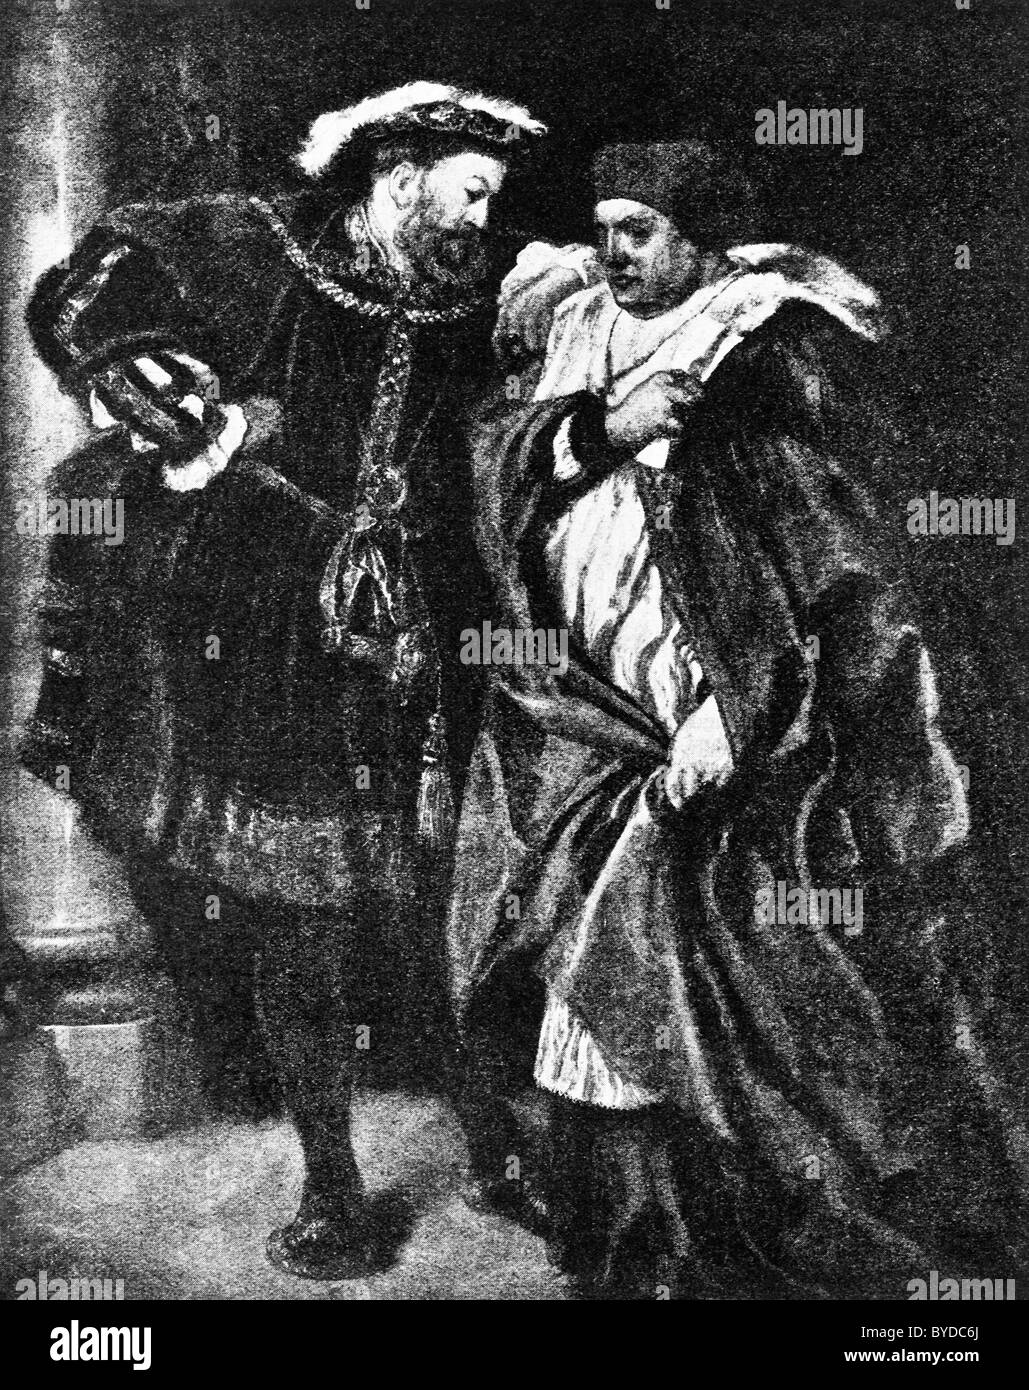 Il re Enrico VIII a parlare con il Cardinale Thomas Wolsey in un dipinto di Sir John Gilbert circa 1888 intitolata "Ego et Rex meus". Foto Stock